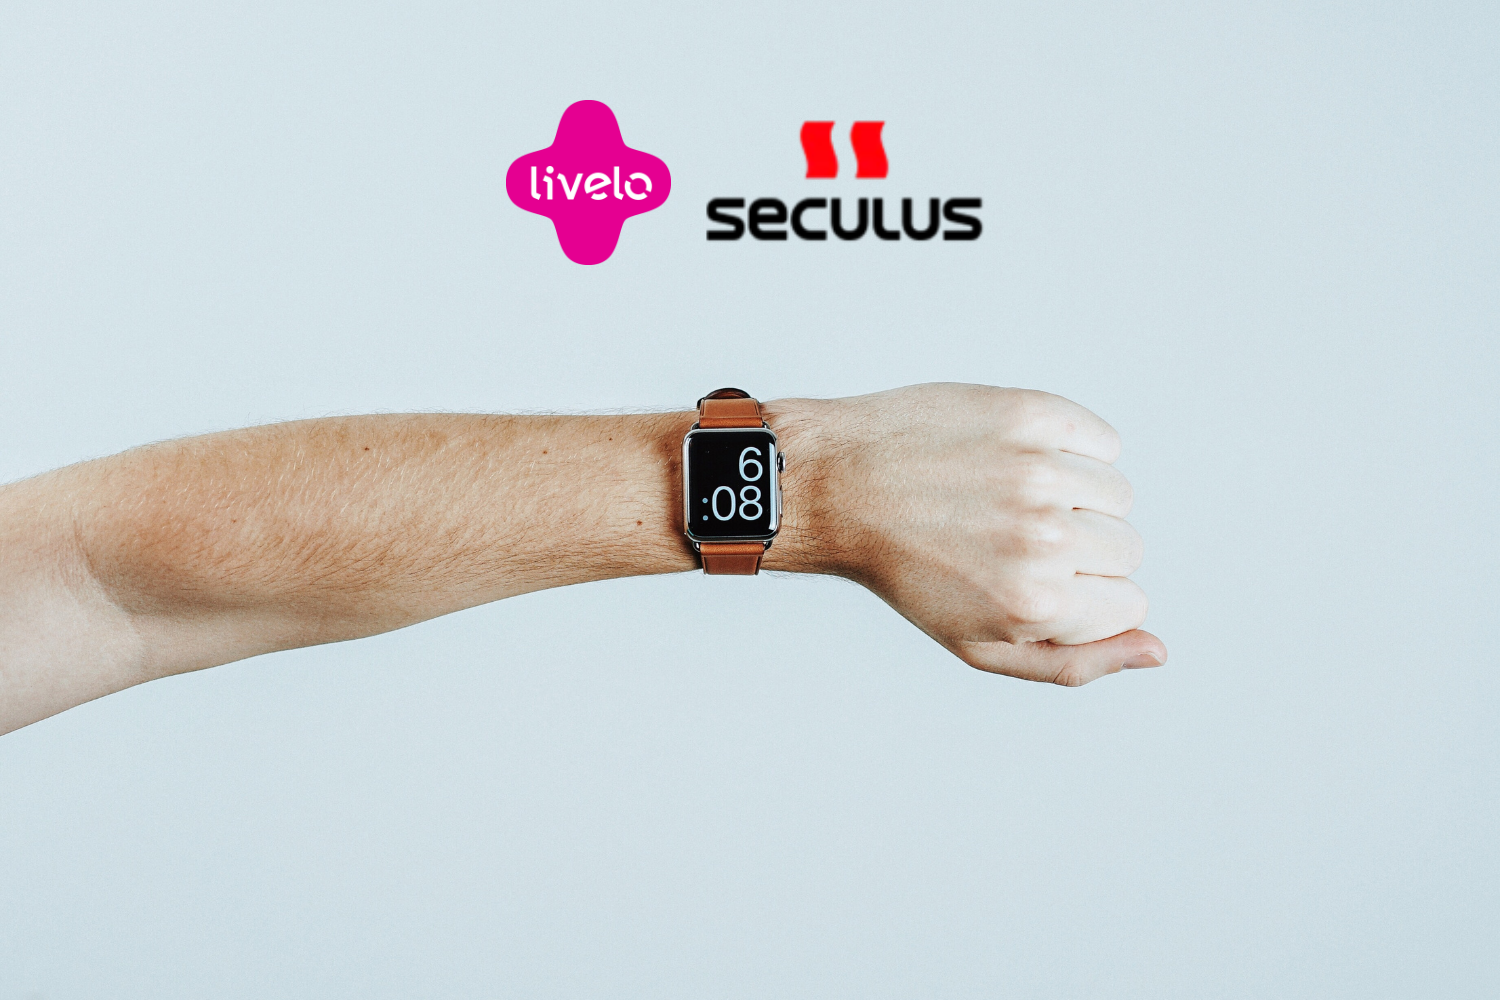 relógio de pulso marcando horário com logo Livelo e Seculus